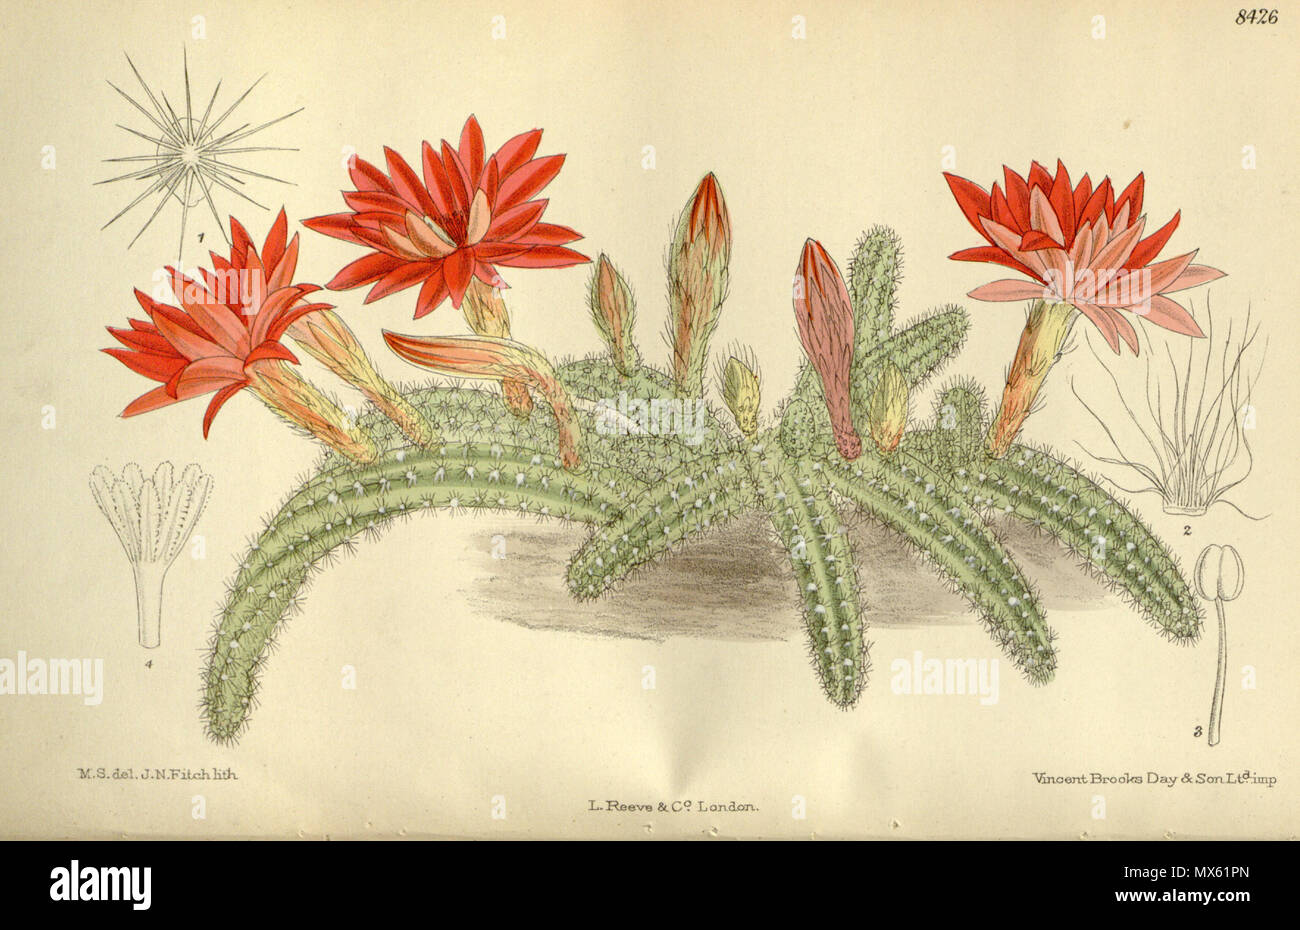 . Cereus silvestrii (= Echinopsis chamaecereus), Cactaceae . 1912. M.S. del, J.N.Fitch, lith. 121 Cereus silvestrii 138-8426 Stock Photo